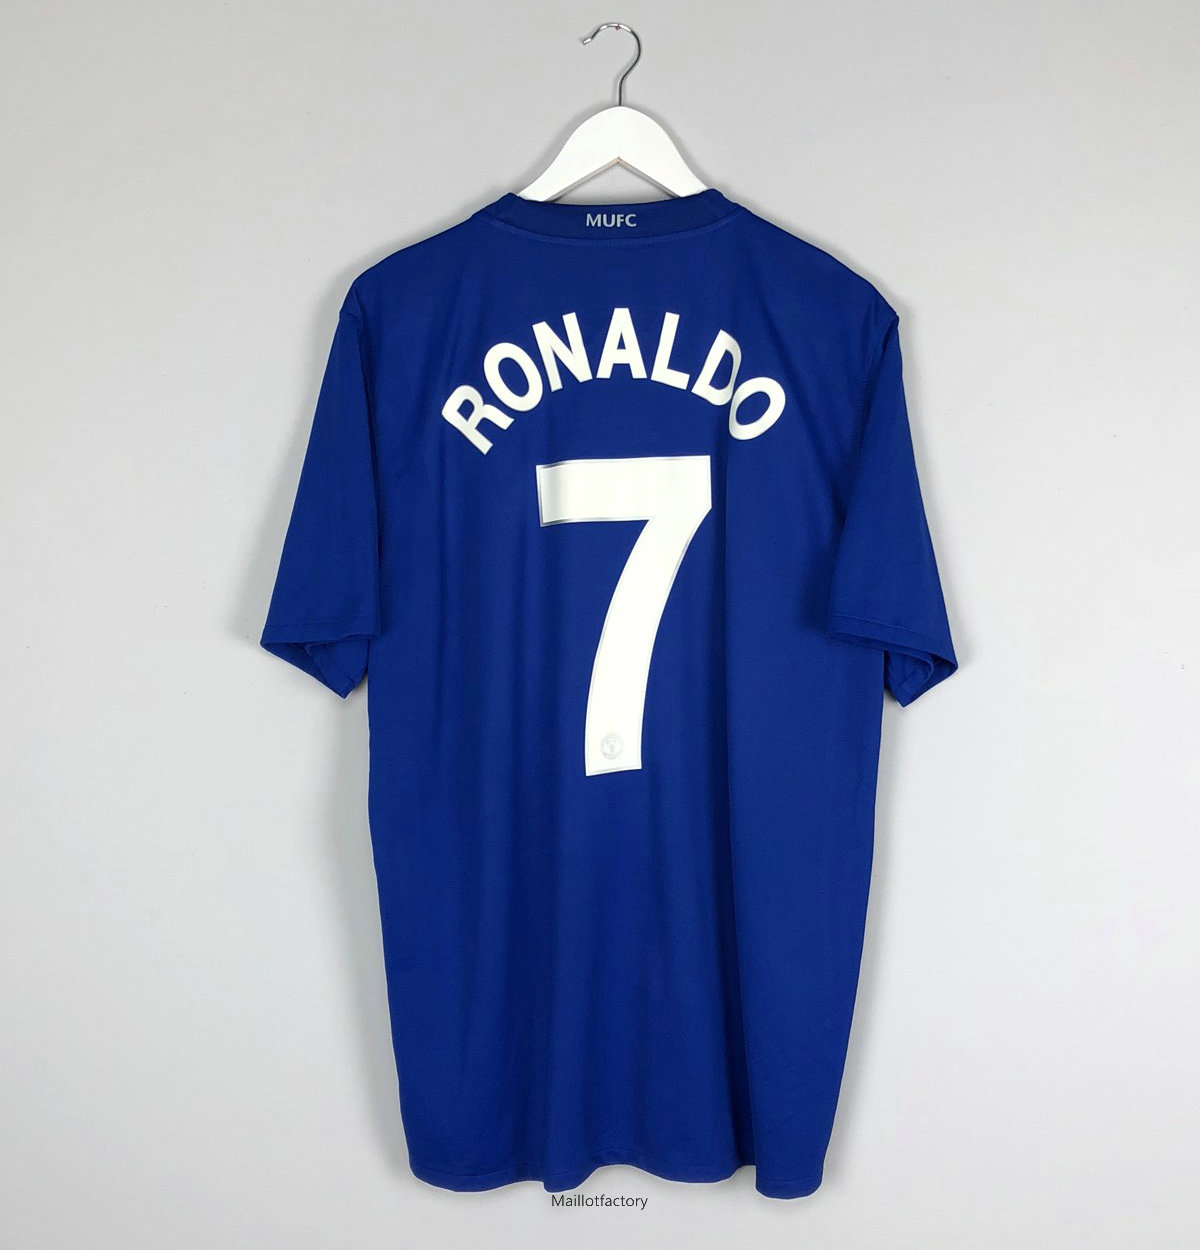 Nouveaux Retro Maillot du Manchester United 2008-09 Exterieur Bleu (7 Cristiano Ronaldo)